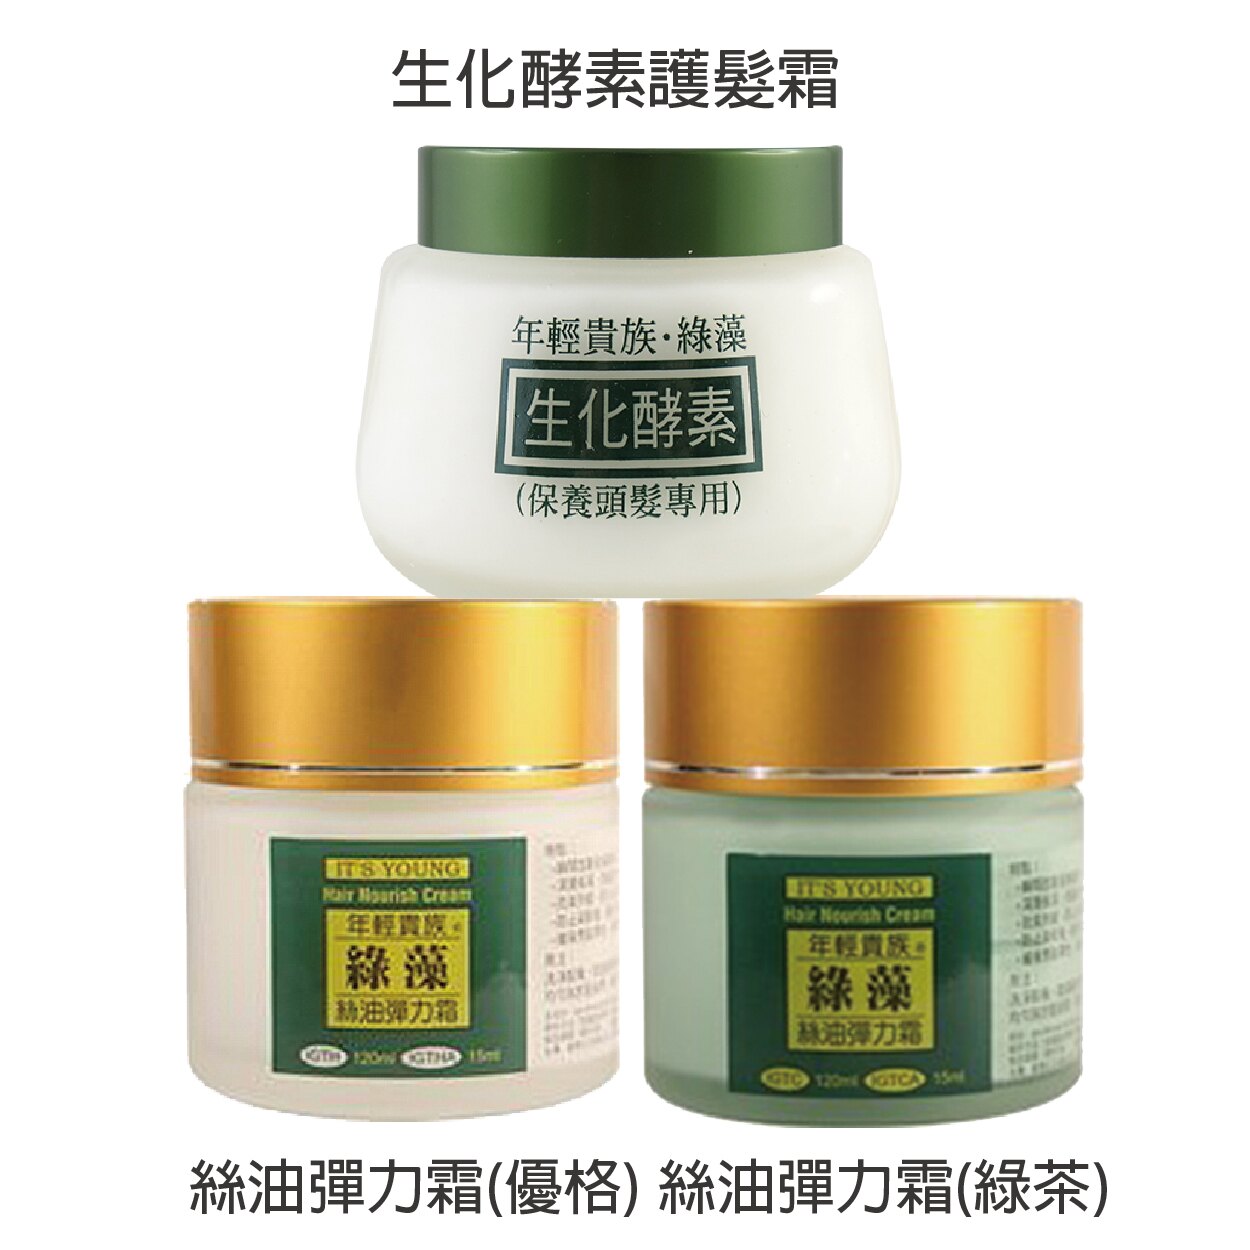 年輕貴族綠藻 絲油彈力霜(優格/綠茶) 120ml 生化酵素護髮霜150ml